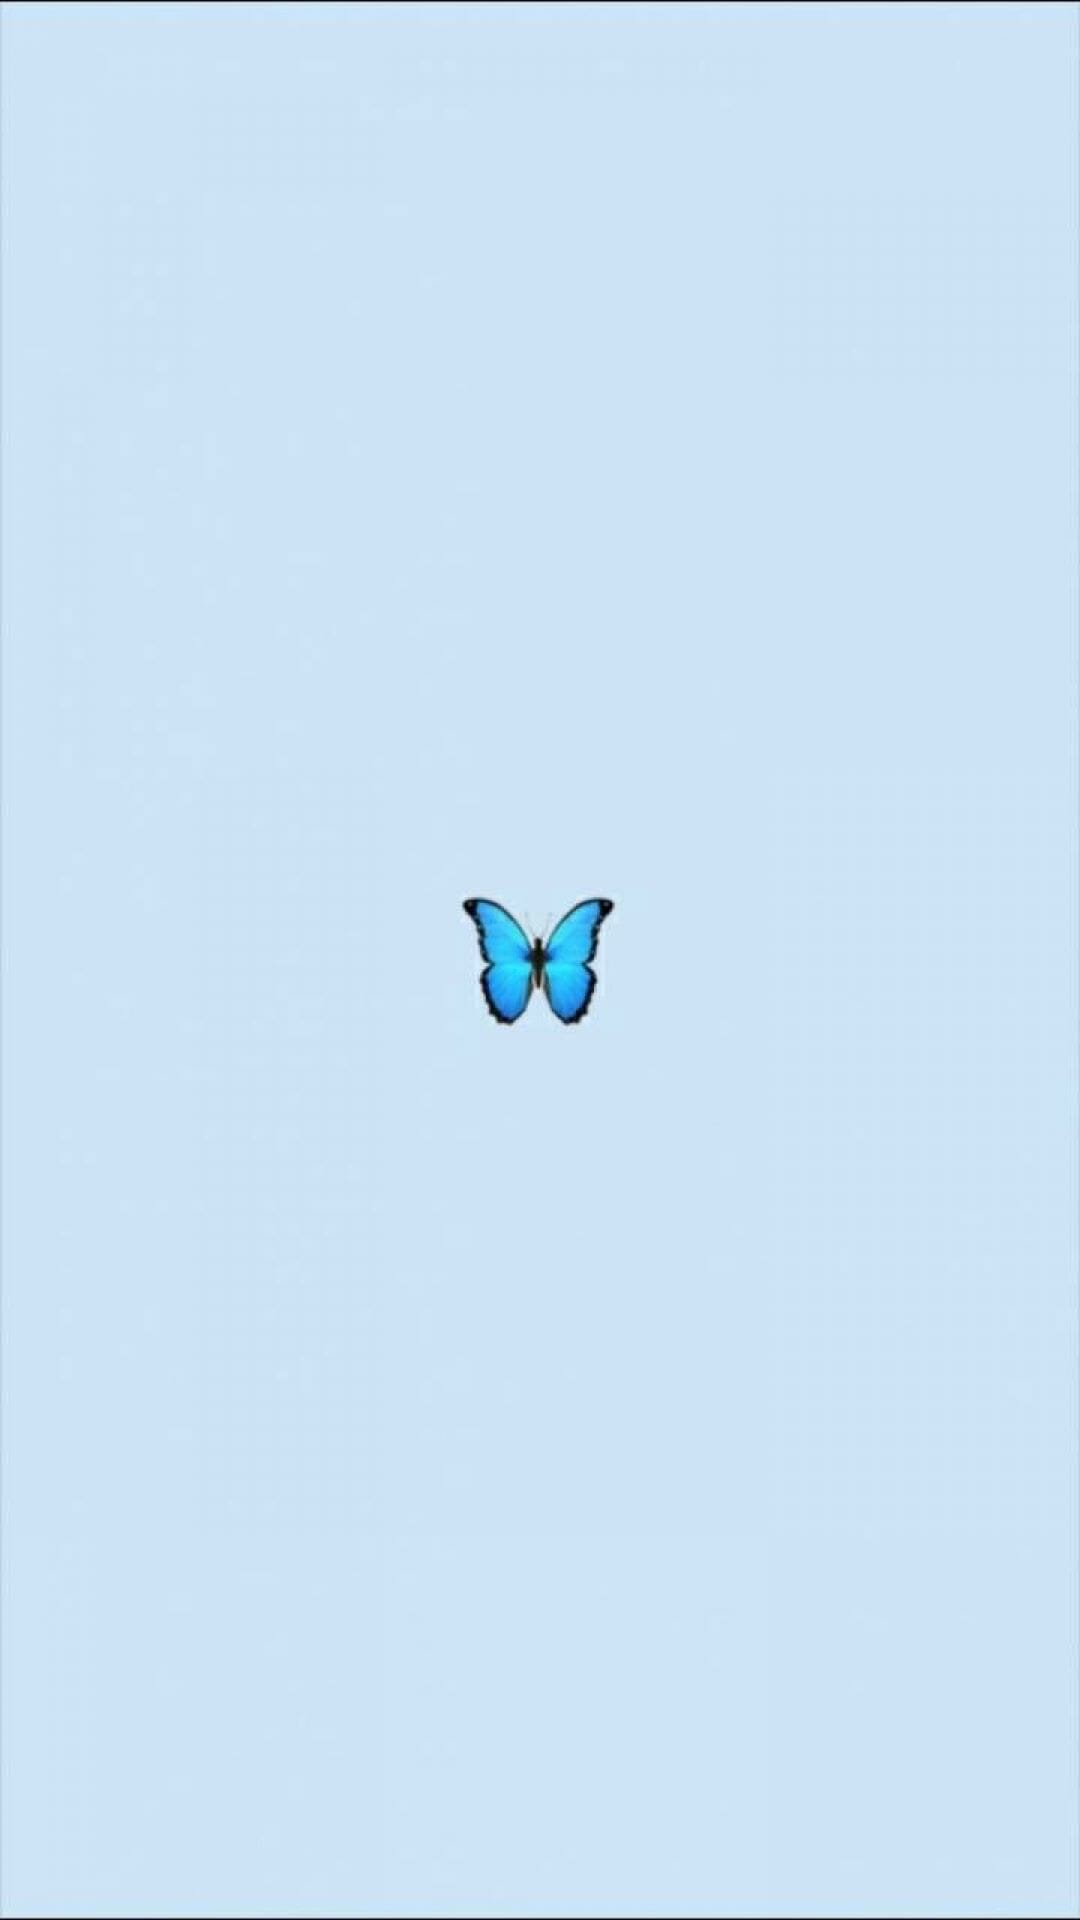 A blue butterfly emoji on a light blue background - VSCO, butterfly